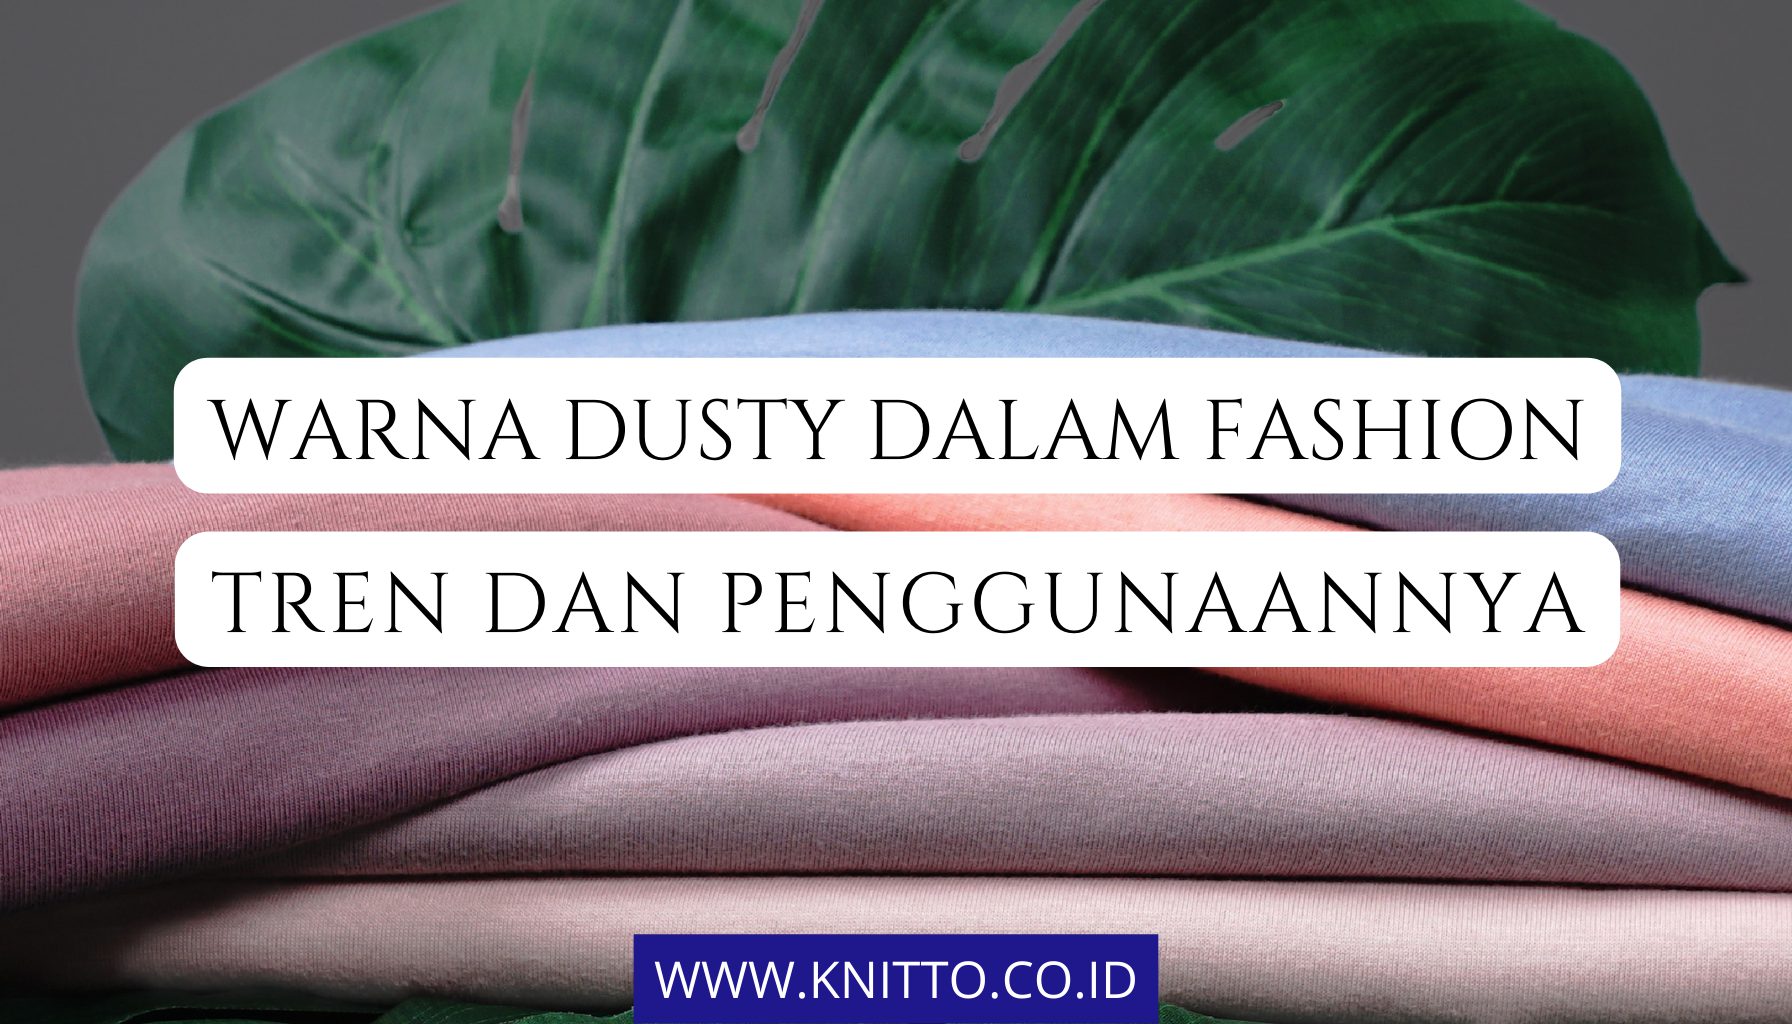 7 Pilihan Warna Dusty yang Unik dalam Fashion, Ada Apa Saja?